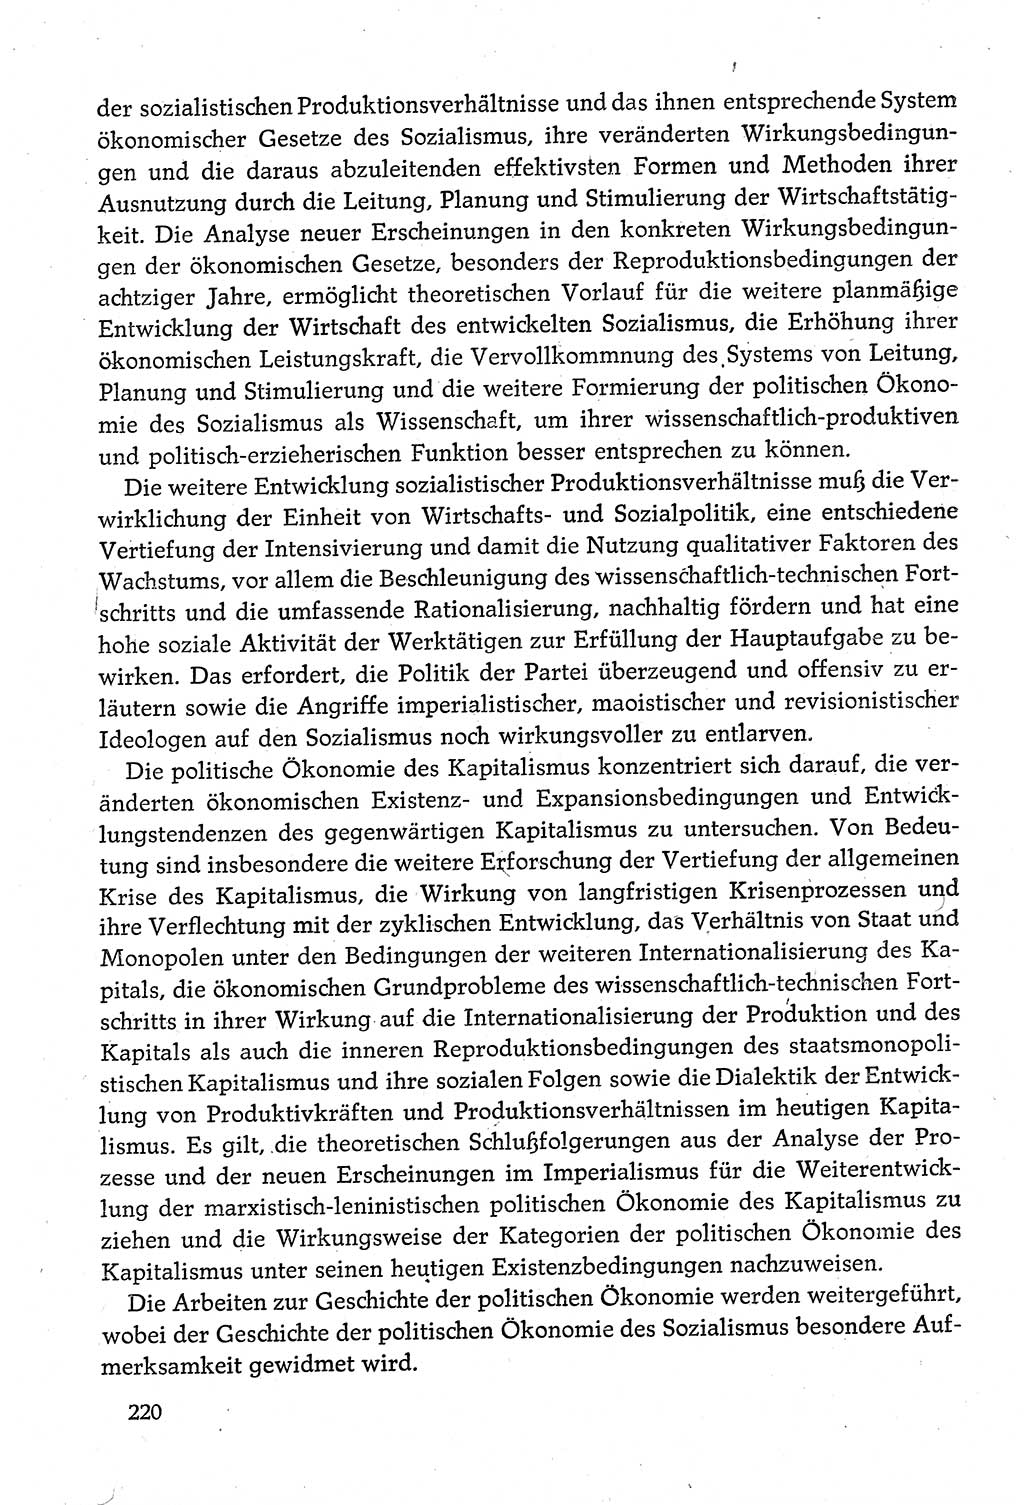 Dokumente der Sozialistischen Einheitspartei Deutschlands (SED) [Deutsche Demokratische Republik (DDR)] 1980-1981, Seite 220 (Dok. SED DDR 1980-1981, S. 220)